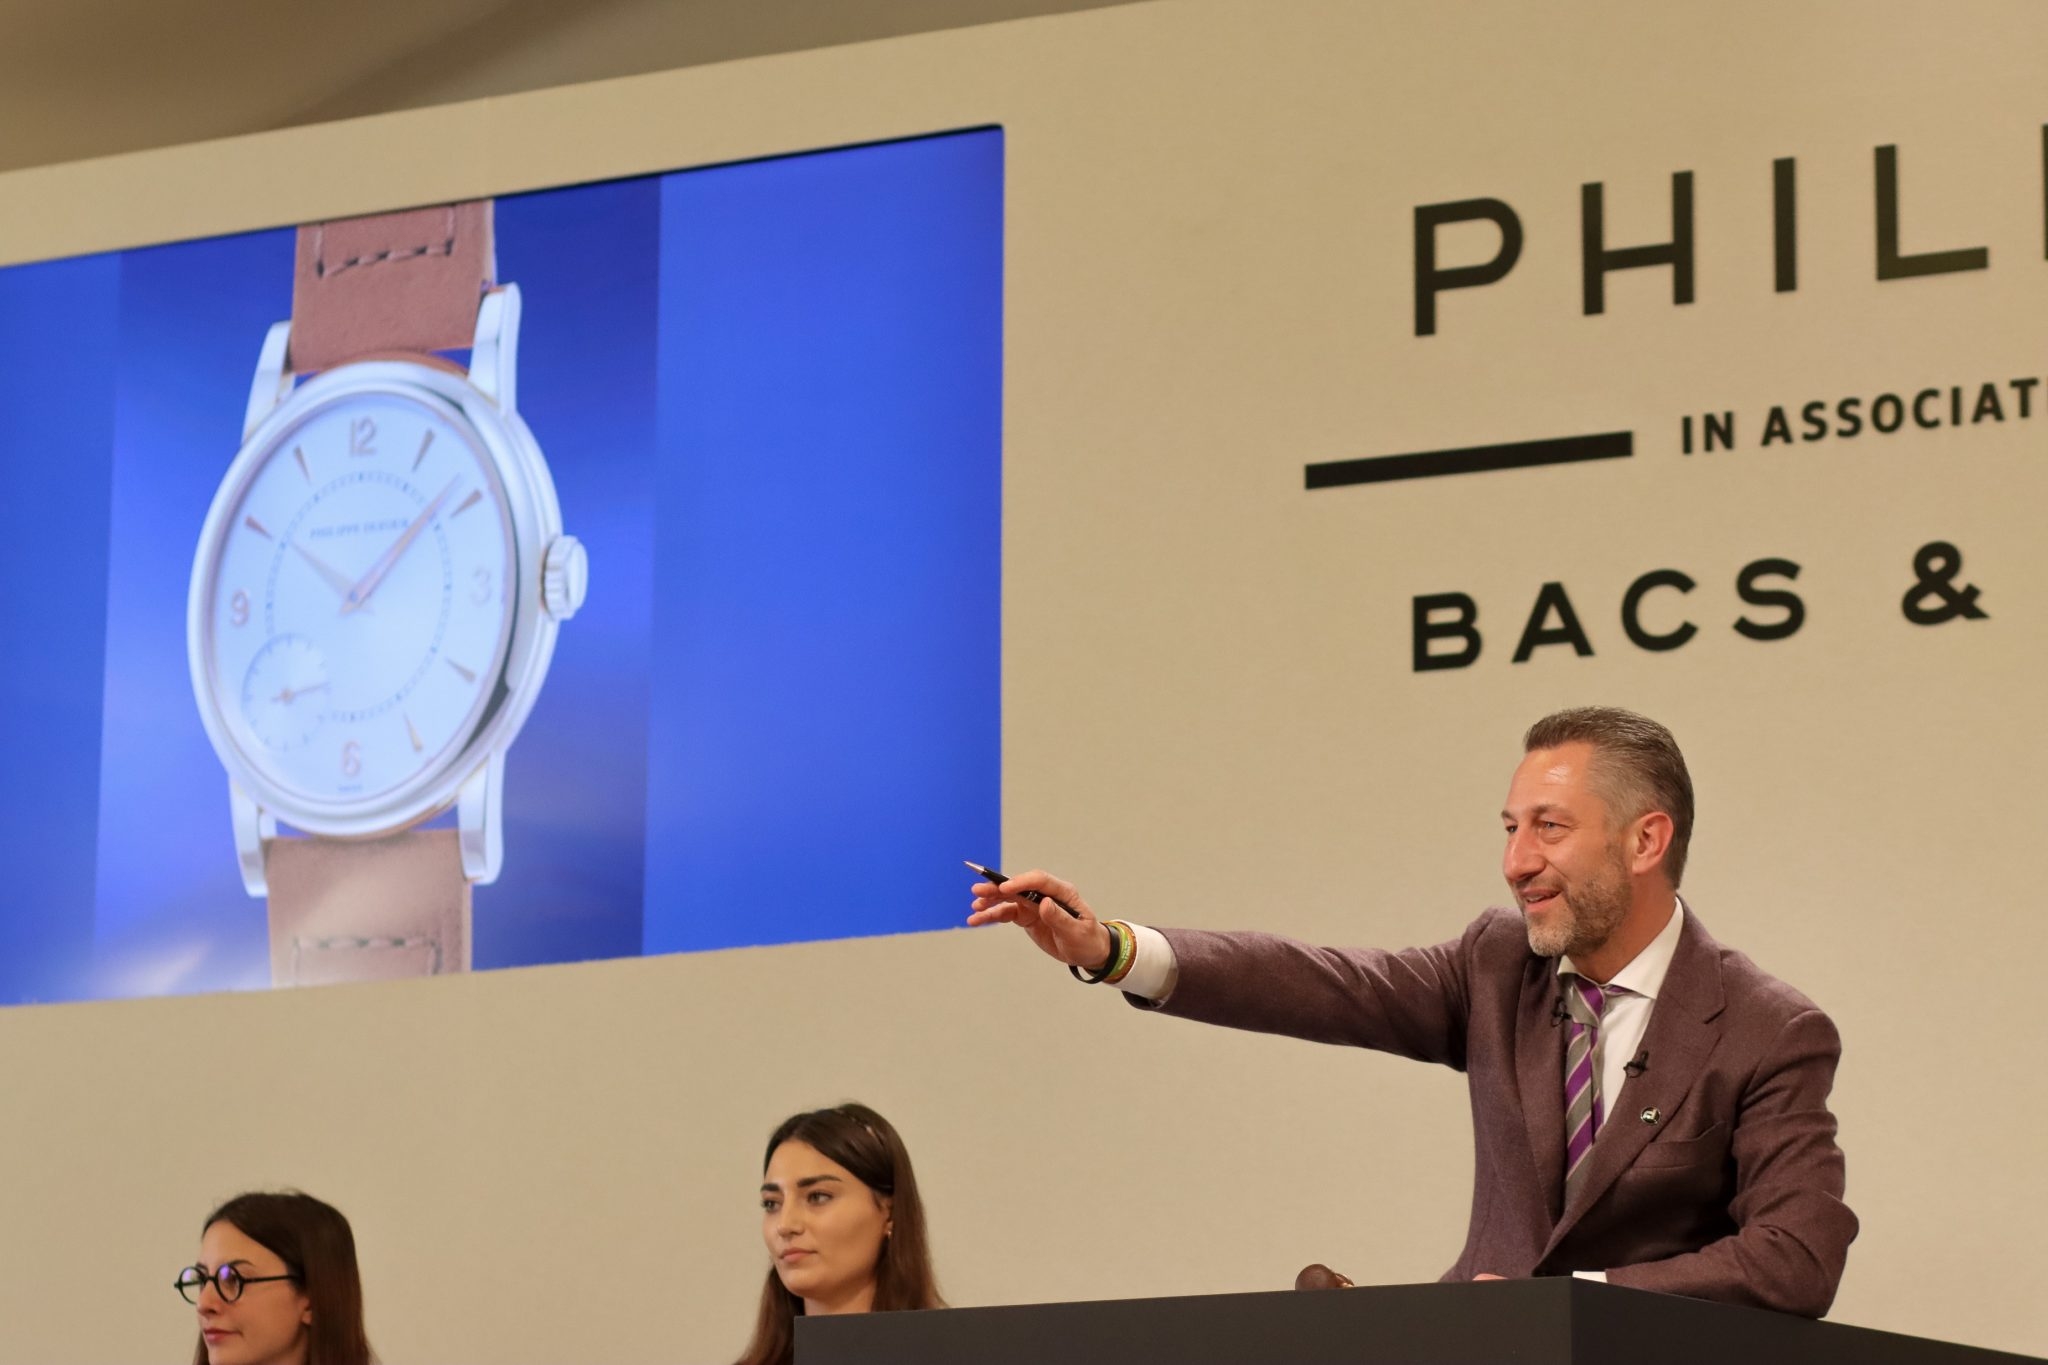 Nhà đấu giá Aurel Bacs chỉ dẫn dắt bán đồng hồ Philippe Dufour Duality trong phiên đấu giá đồng hồ Geneva của Phillip: XIV